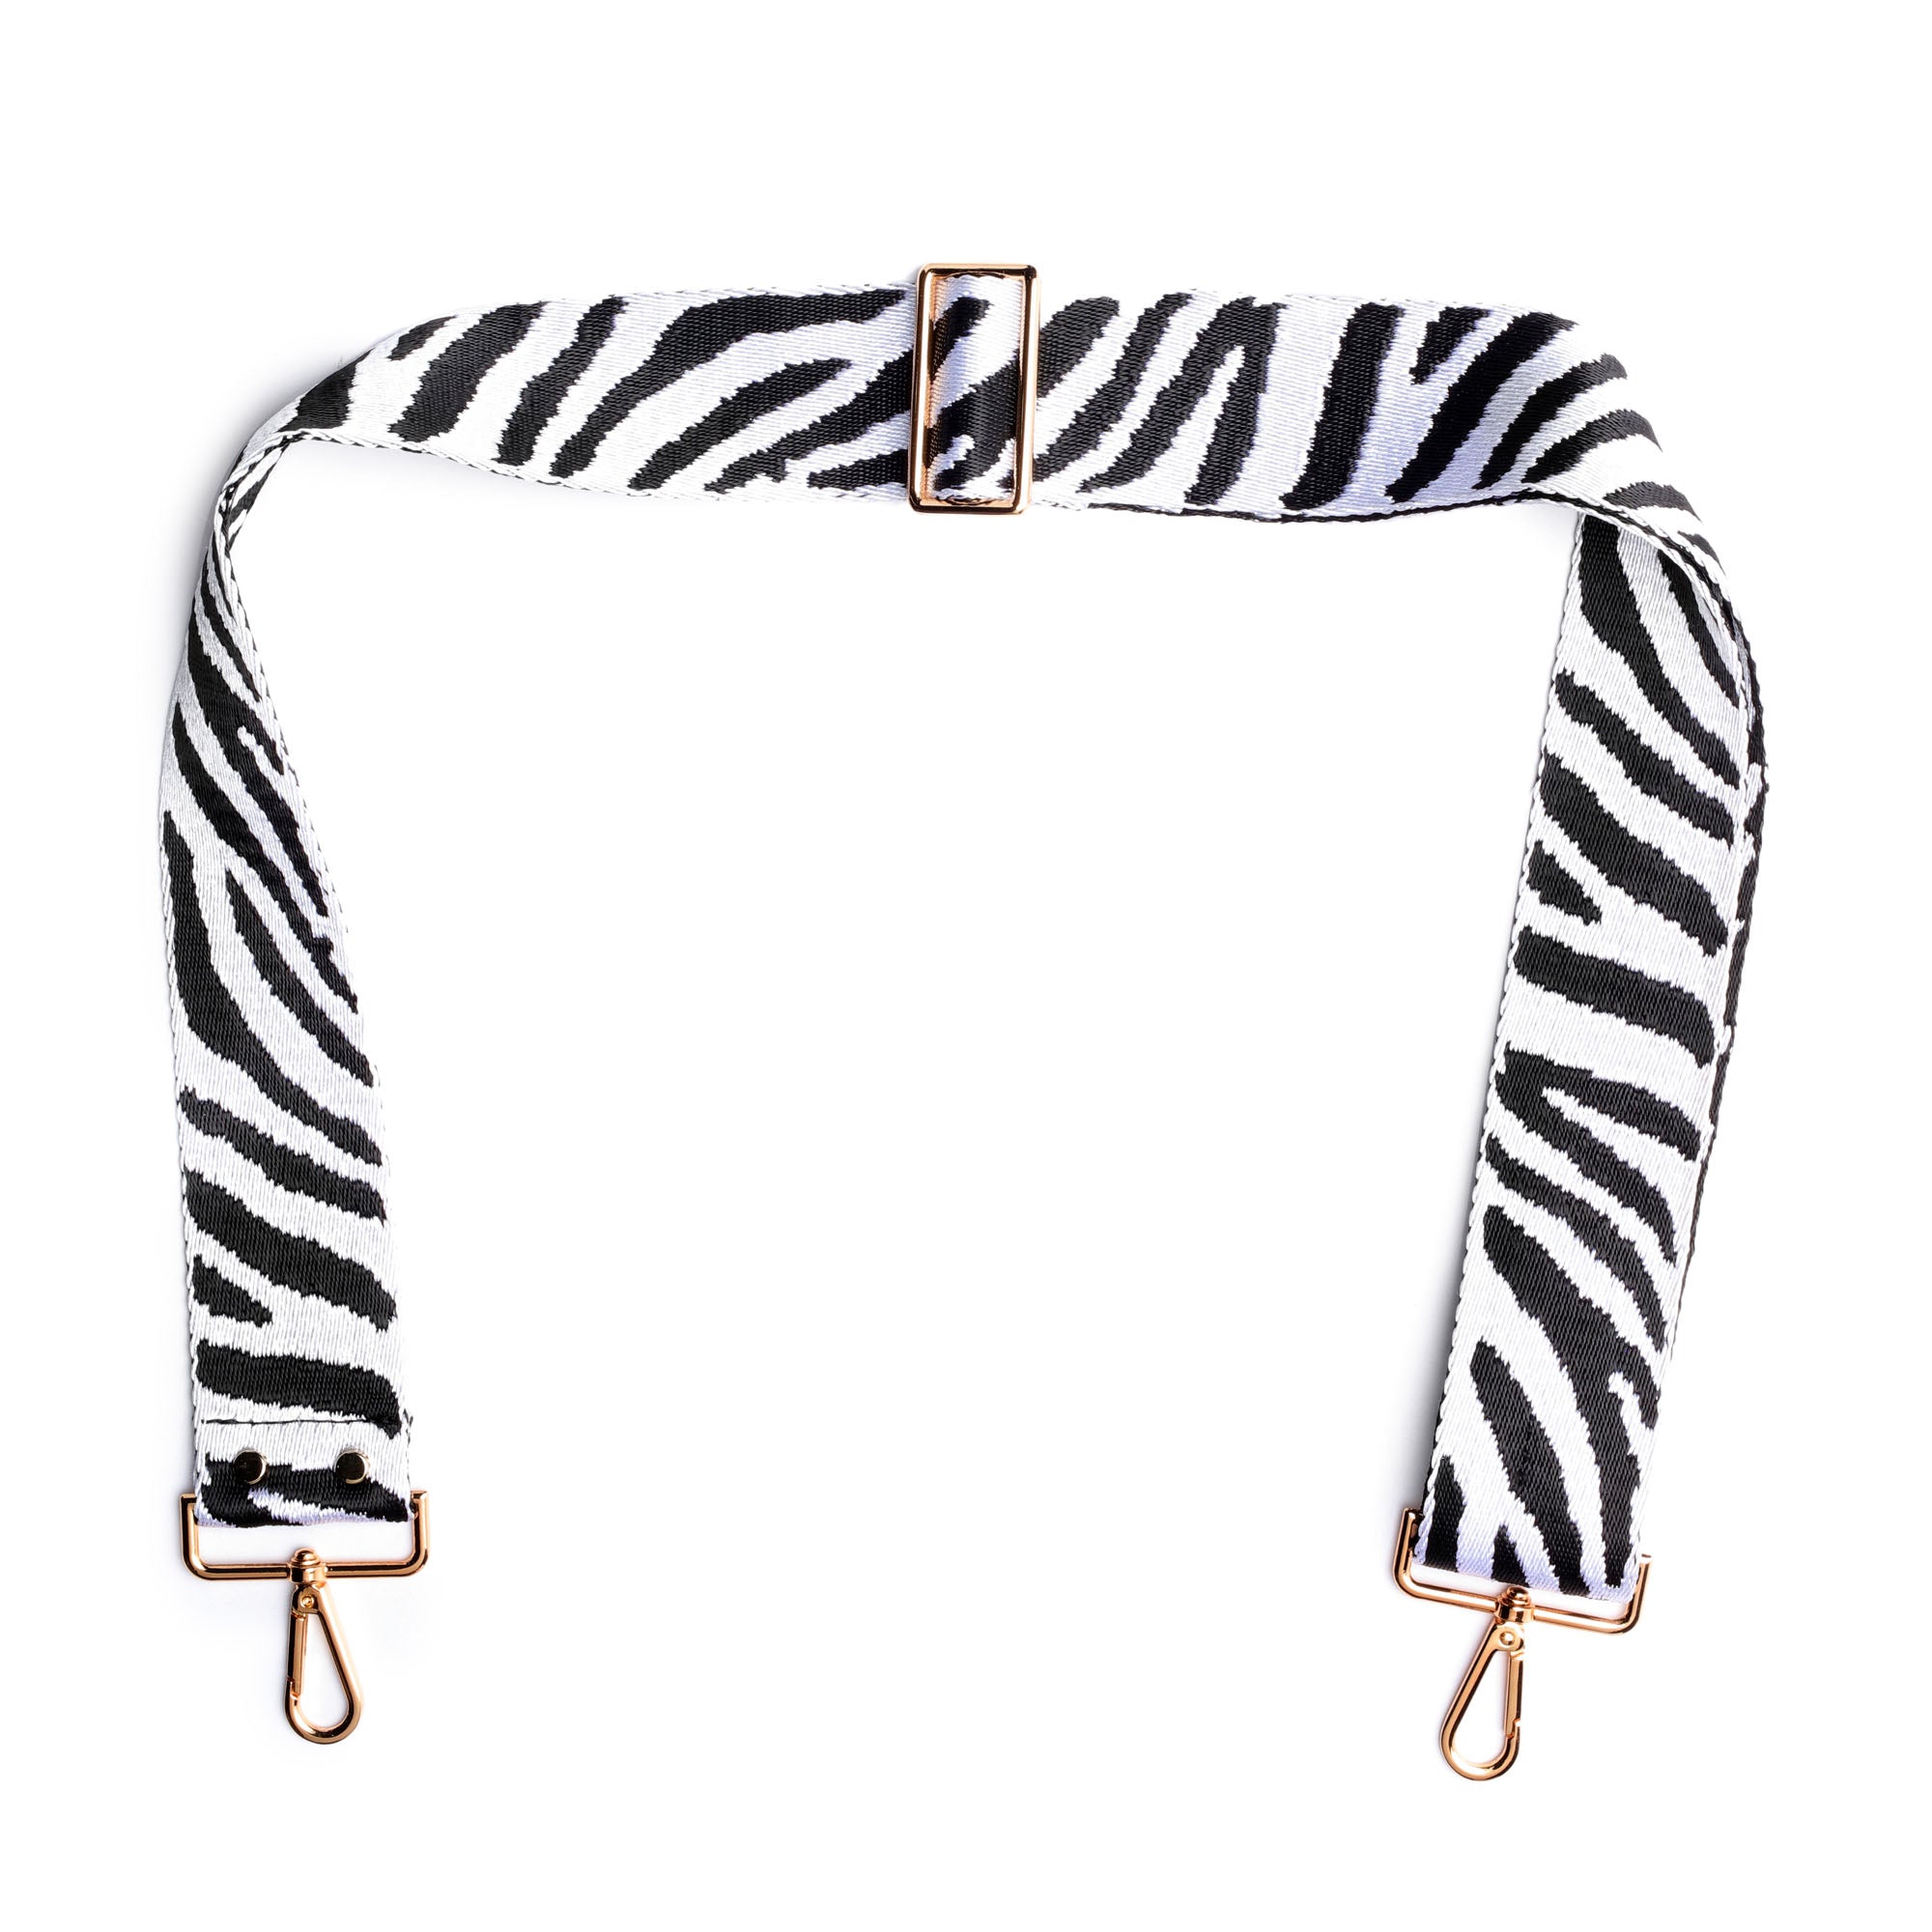 Crossbody strap - Zebra